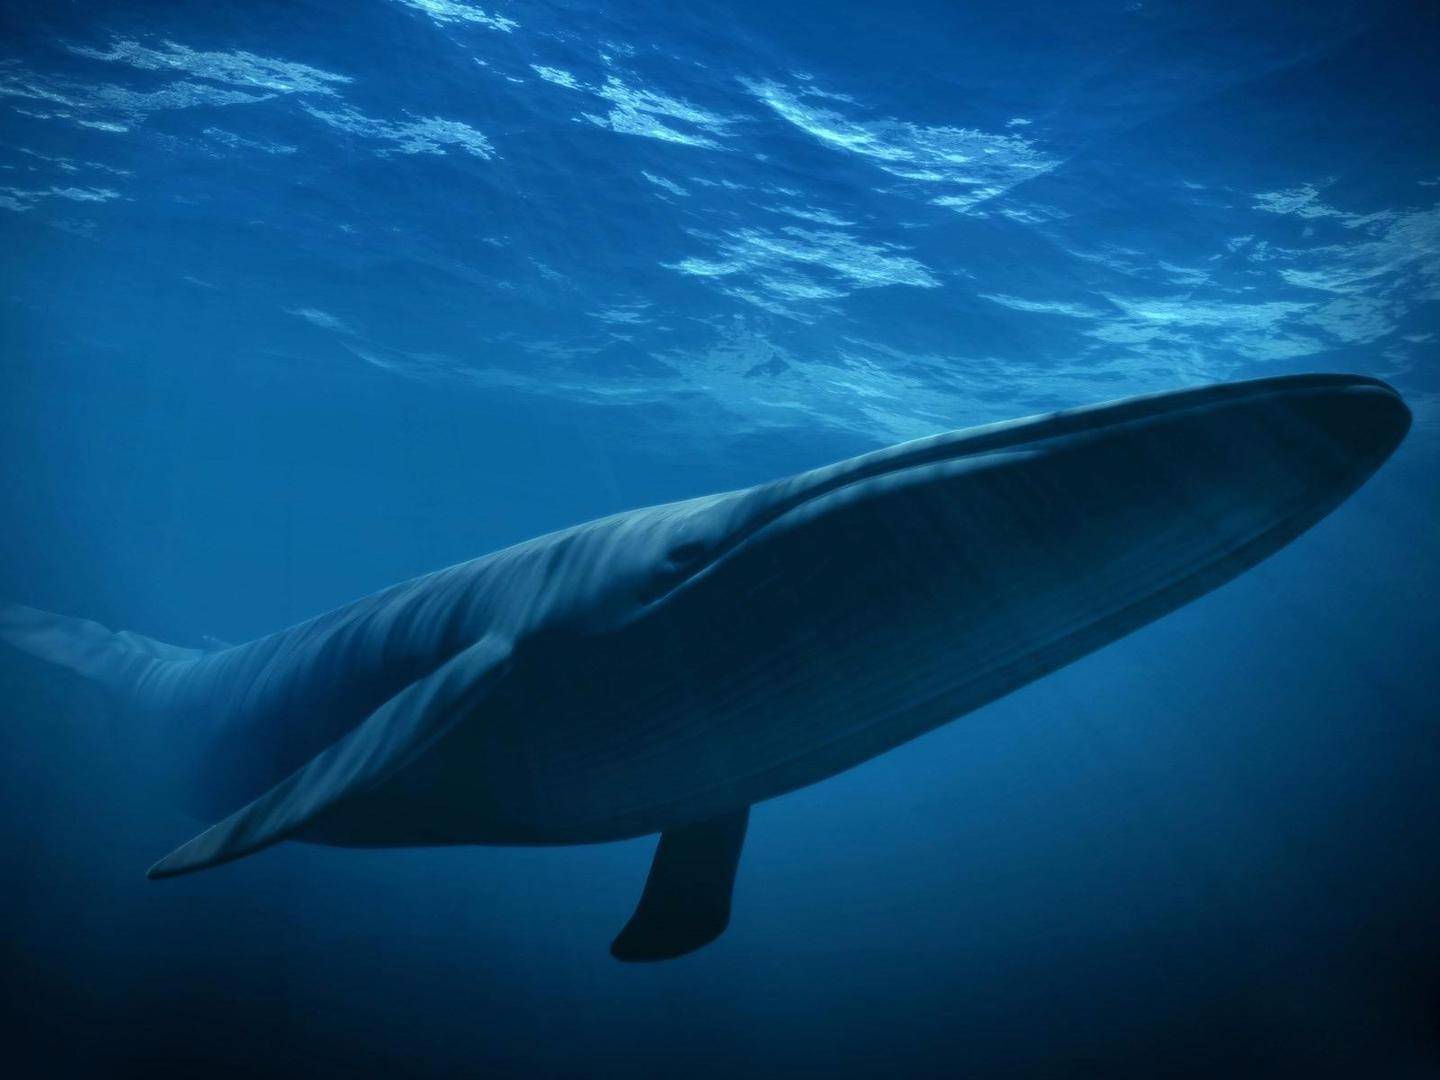 近距离拍摄30米长的蓝鲸 那是什么样的恐惧感觉_哔哩哔哩 (゜-゜)つロ 干杯~-bilibili